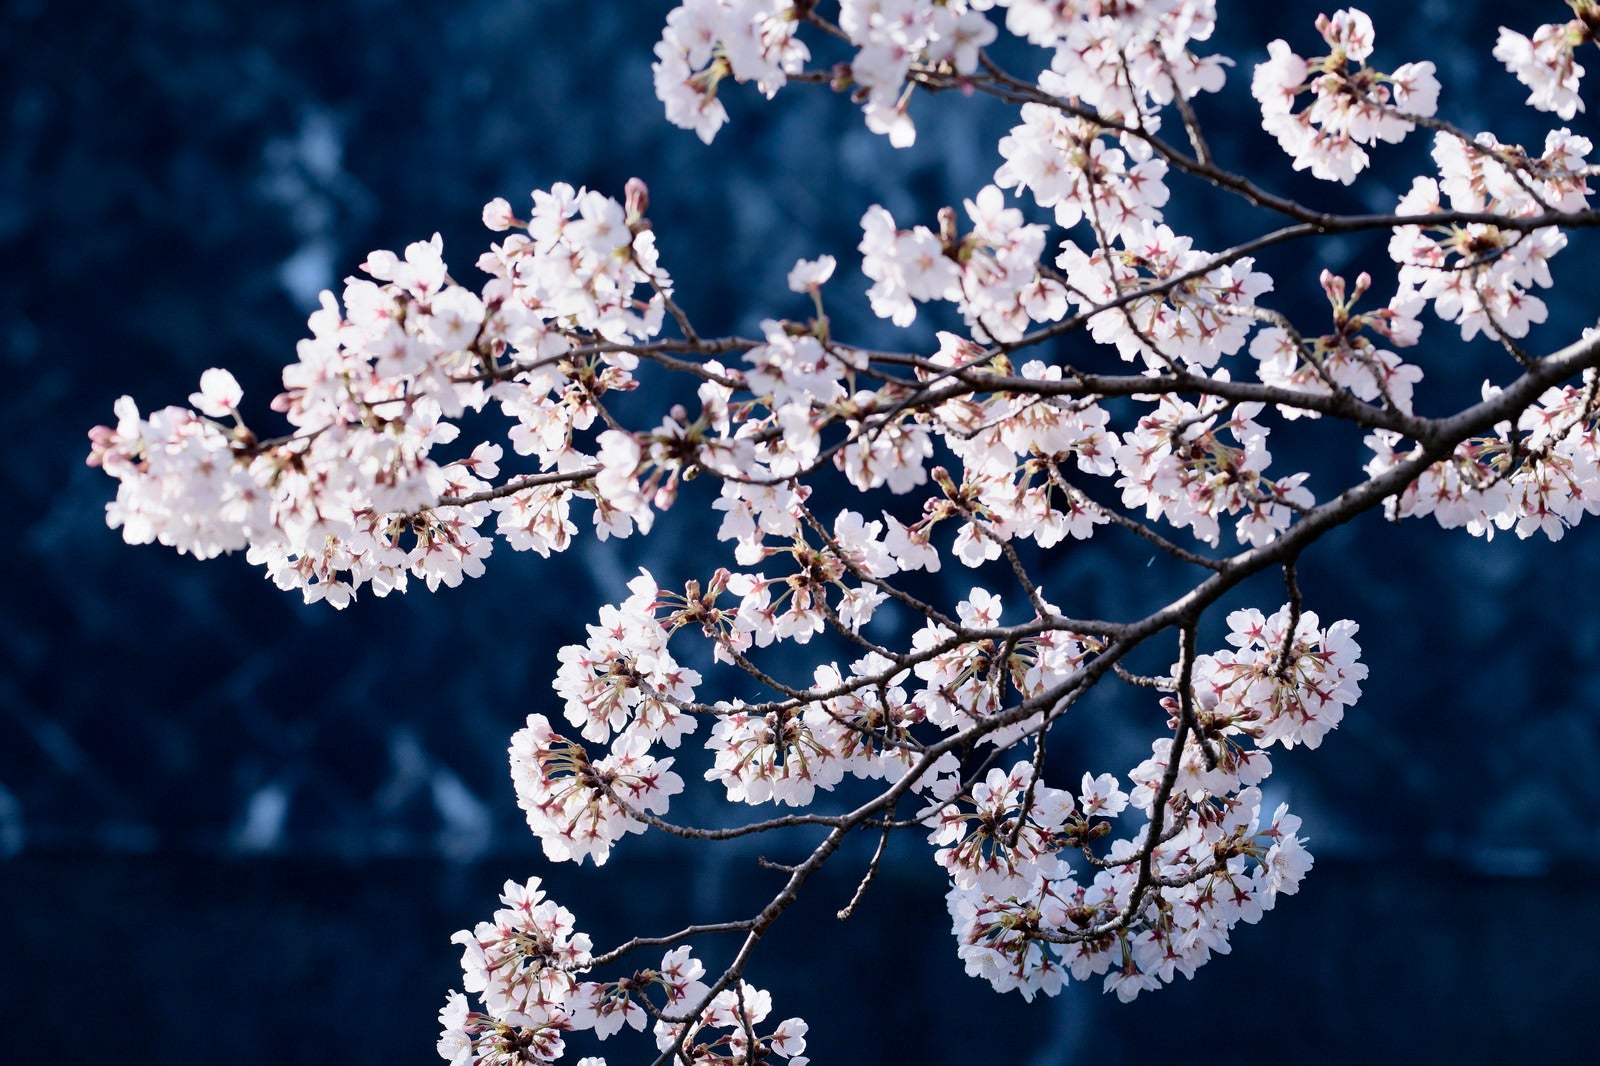 「青い影の上に浮かび上がるピンクの桜」の写真